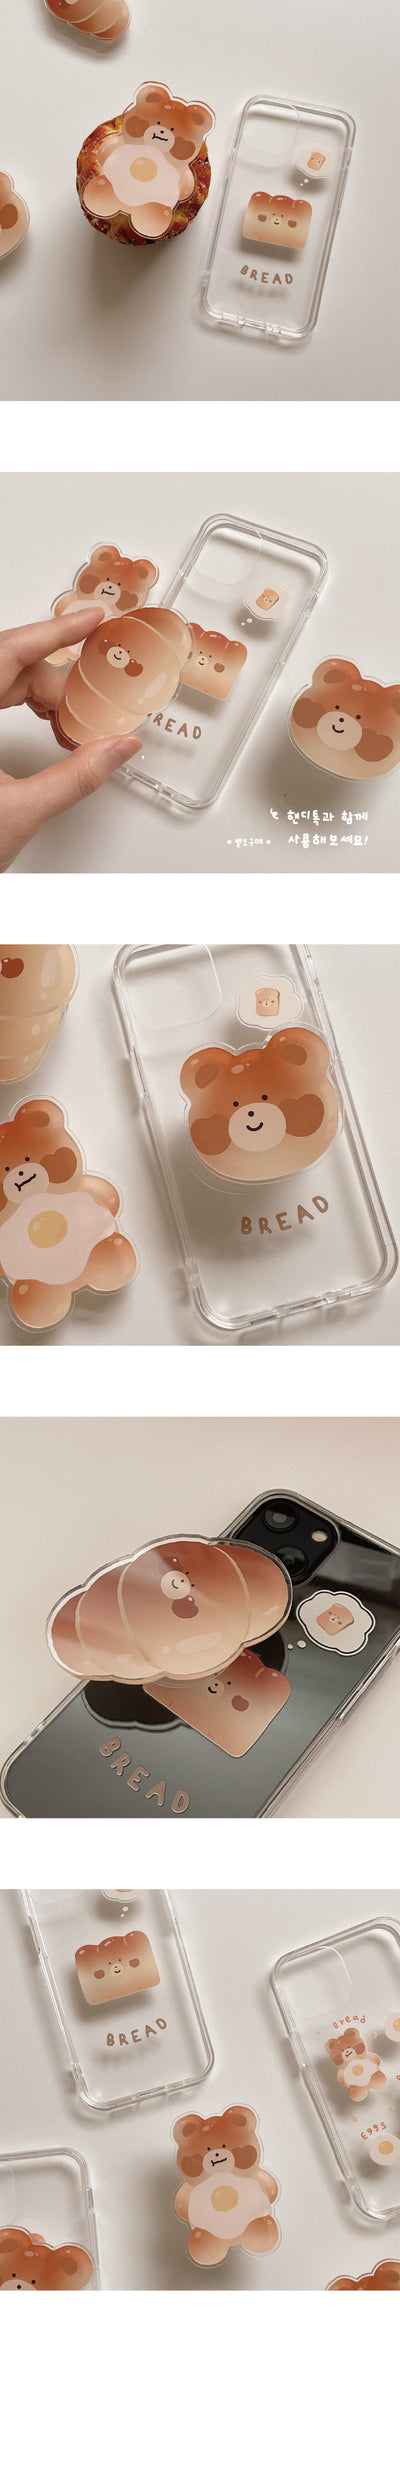 Bread Bebe Smartphone Case